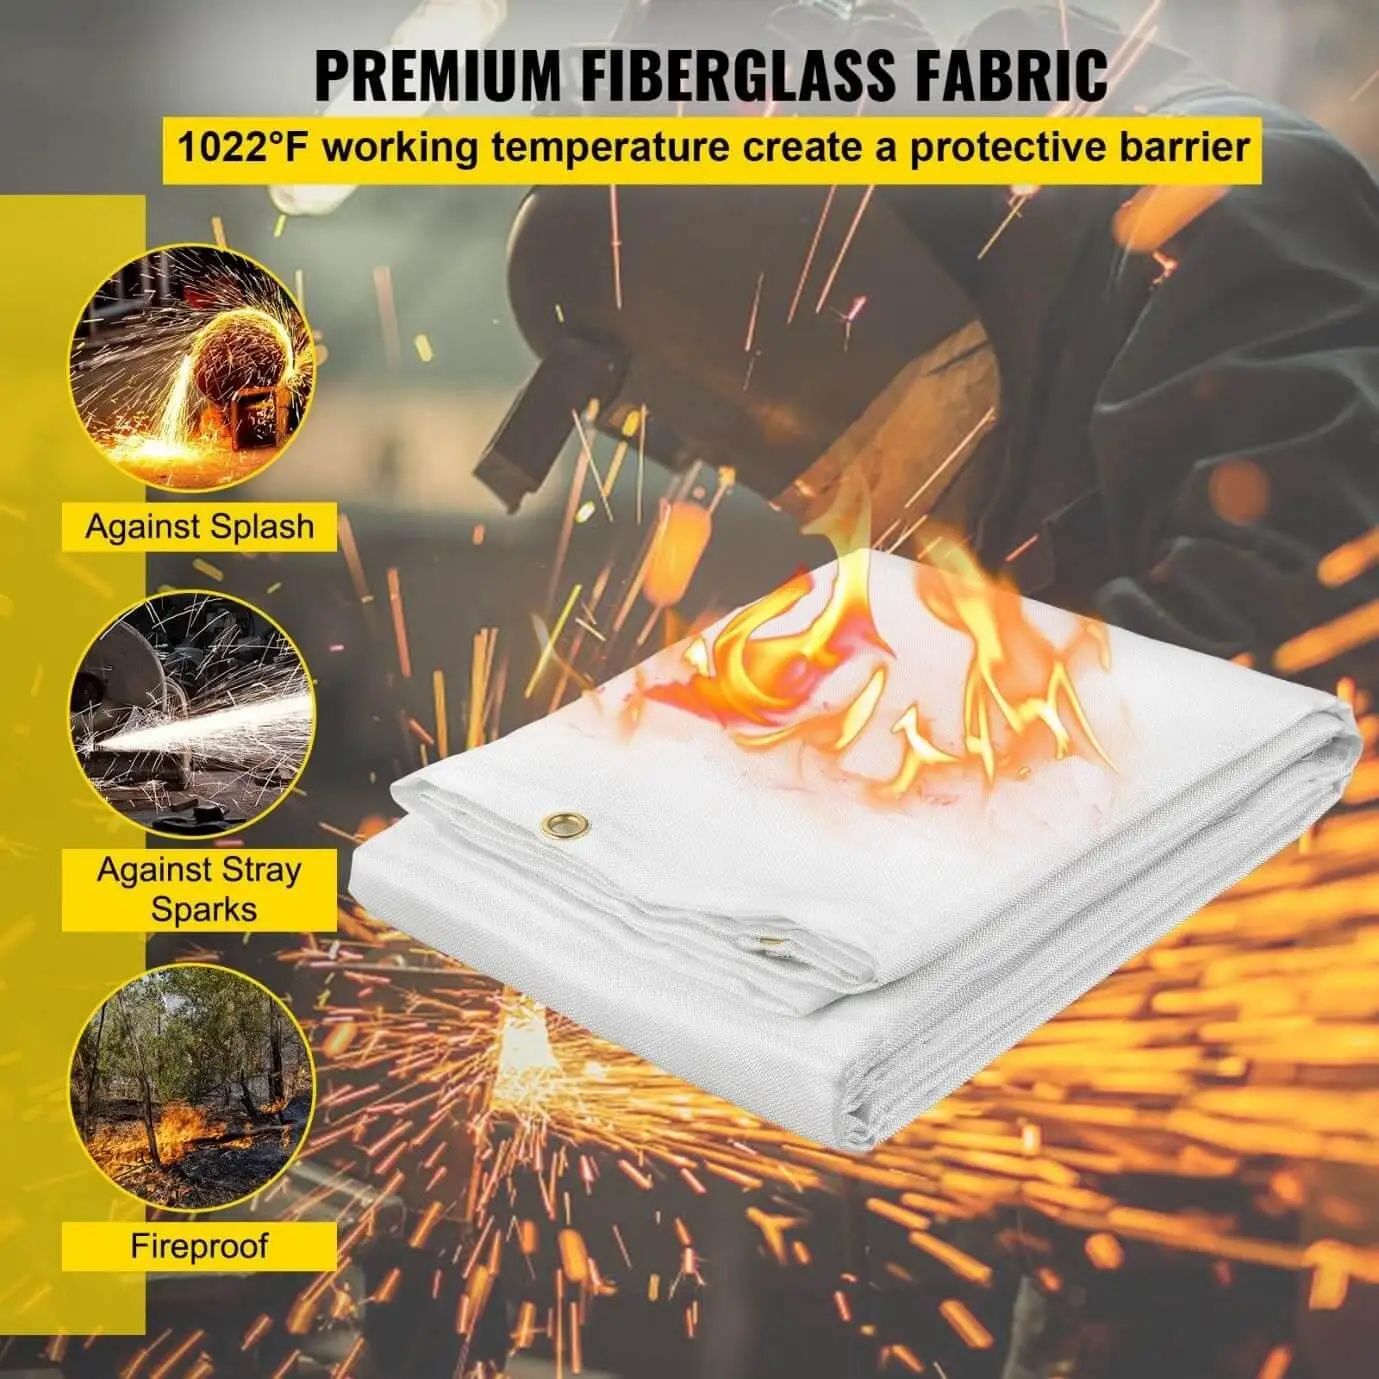 welding fire blanket features